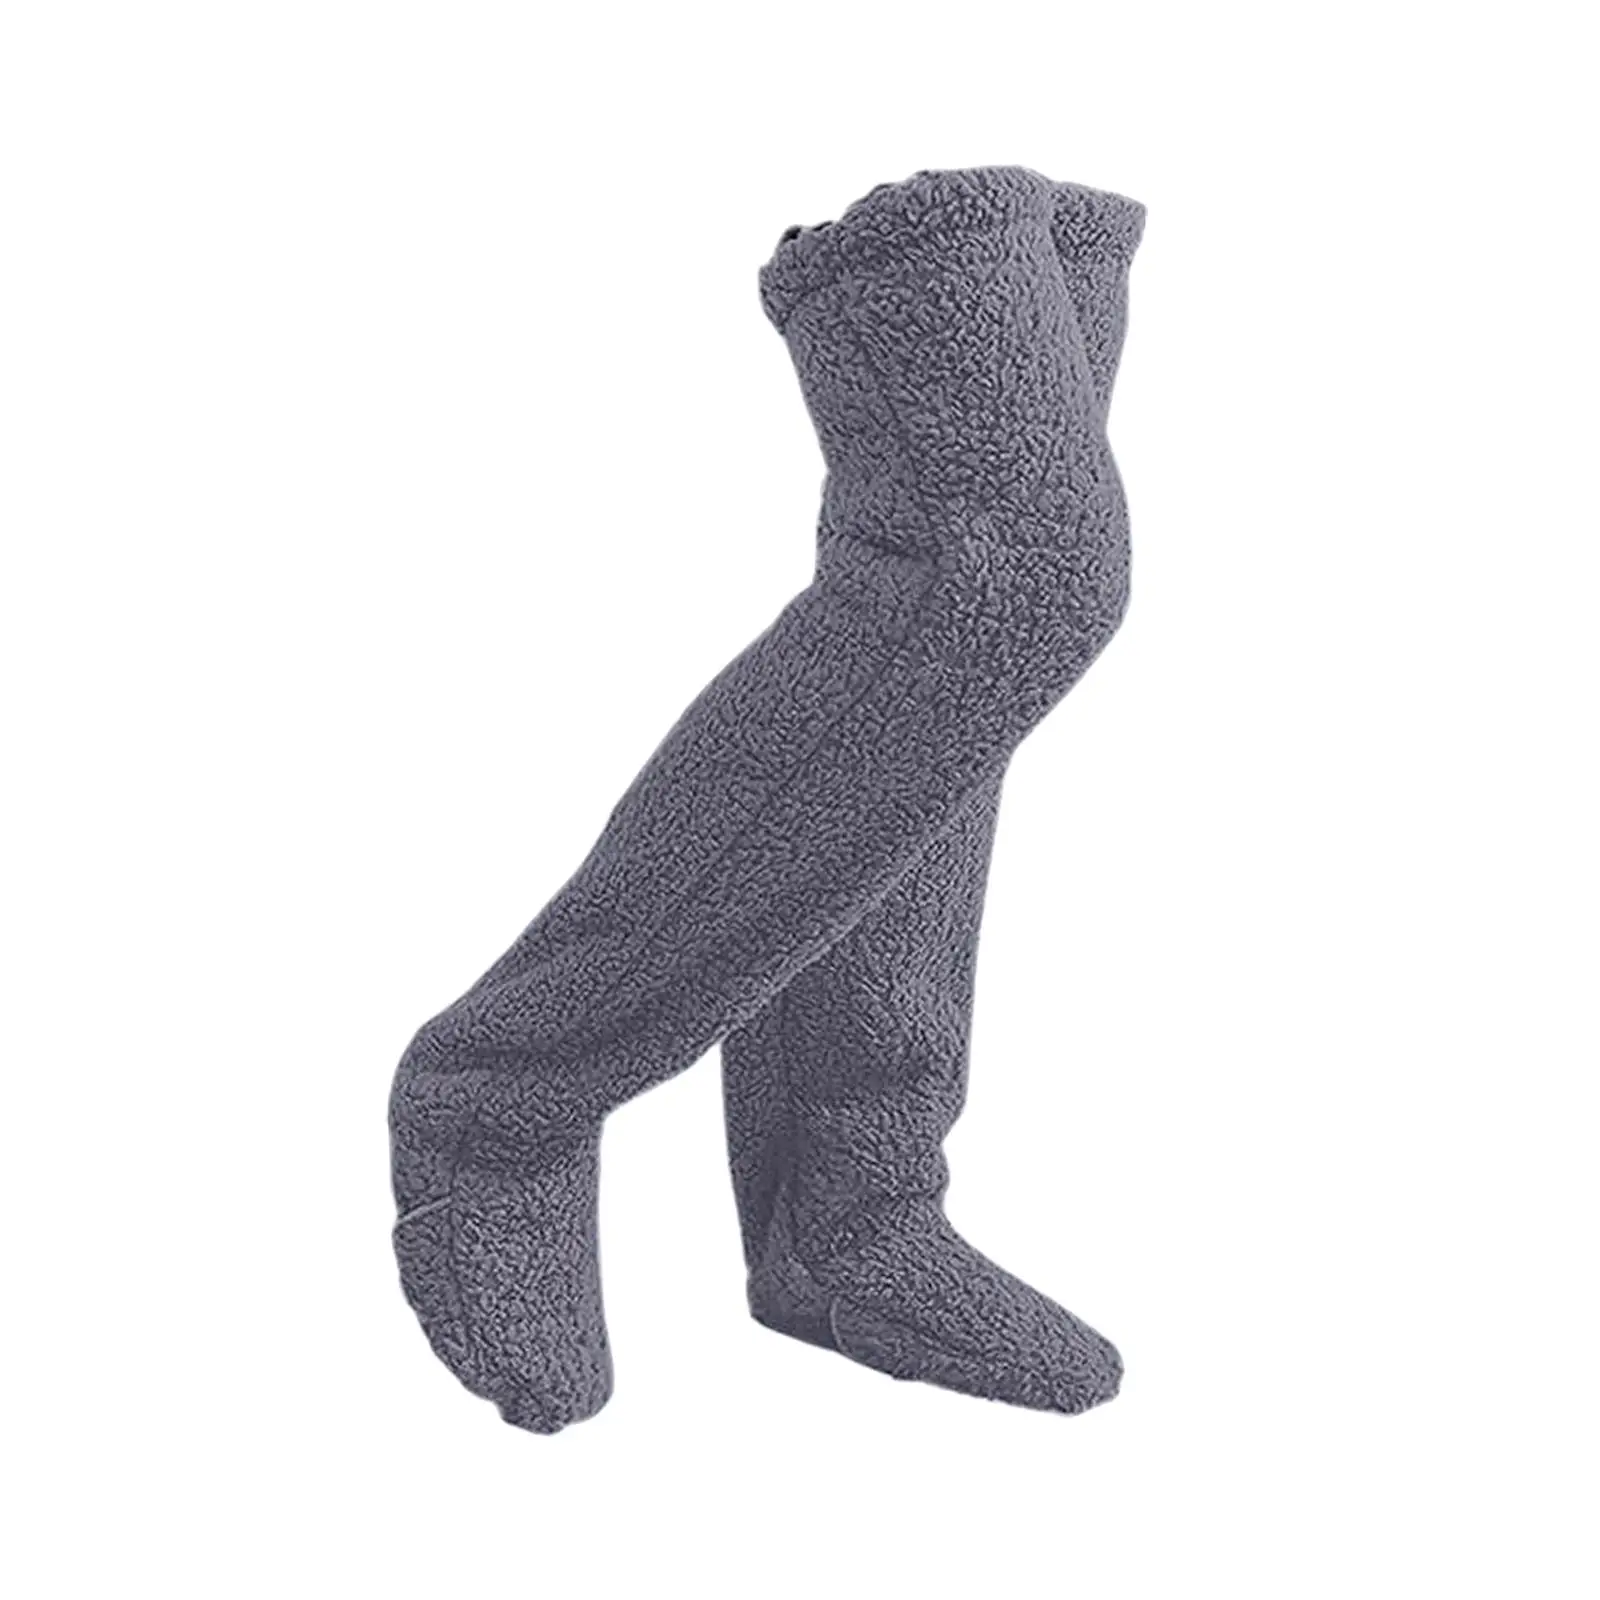 Thigh High Socks, Plush Leg Warmers, Slipper Stockings, Over Knee High Socks for Bedroom